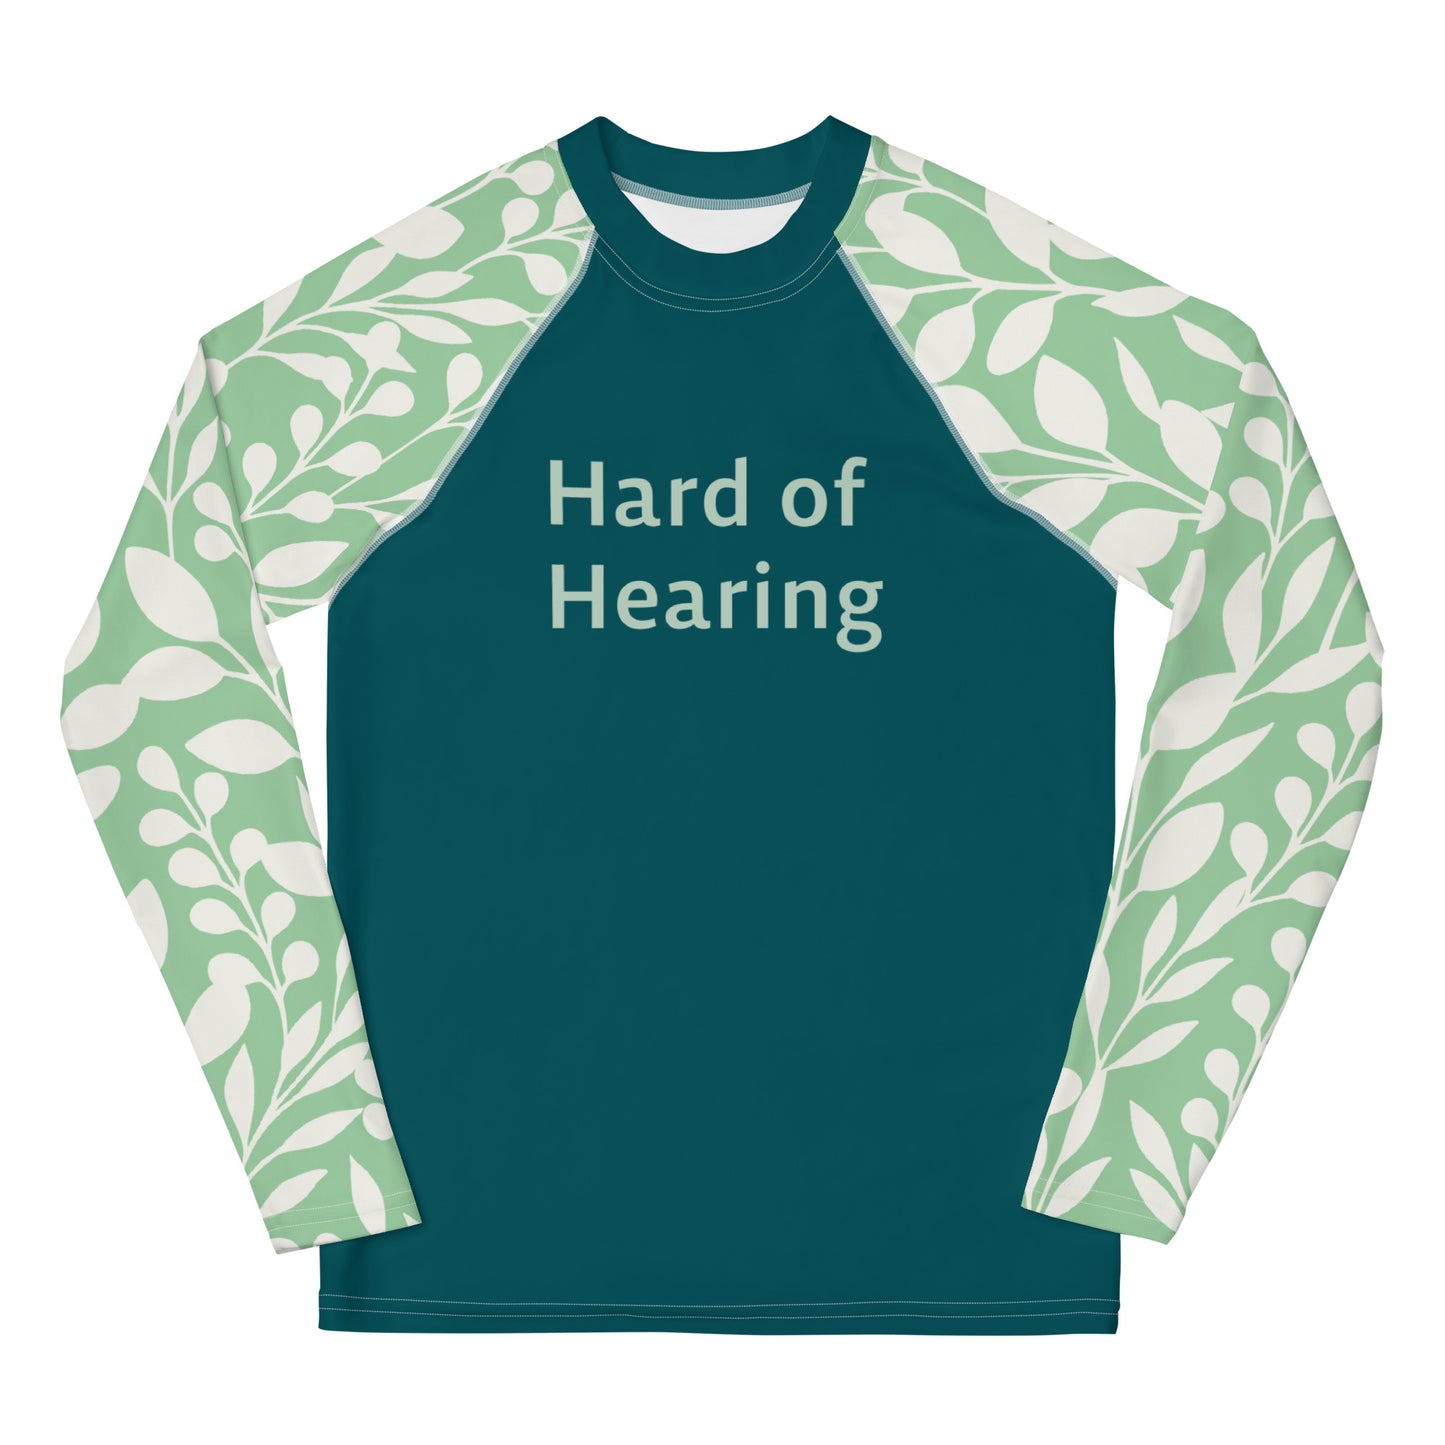 Hard of Hearing - Green Leaf Youth Rash Guard